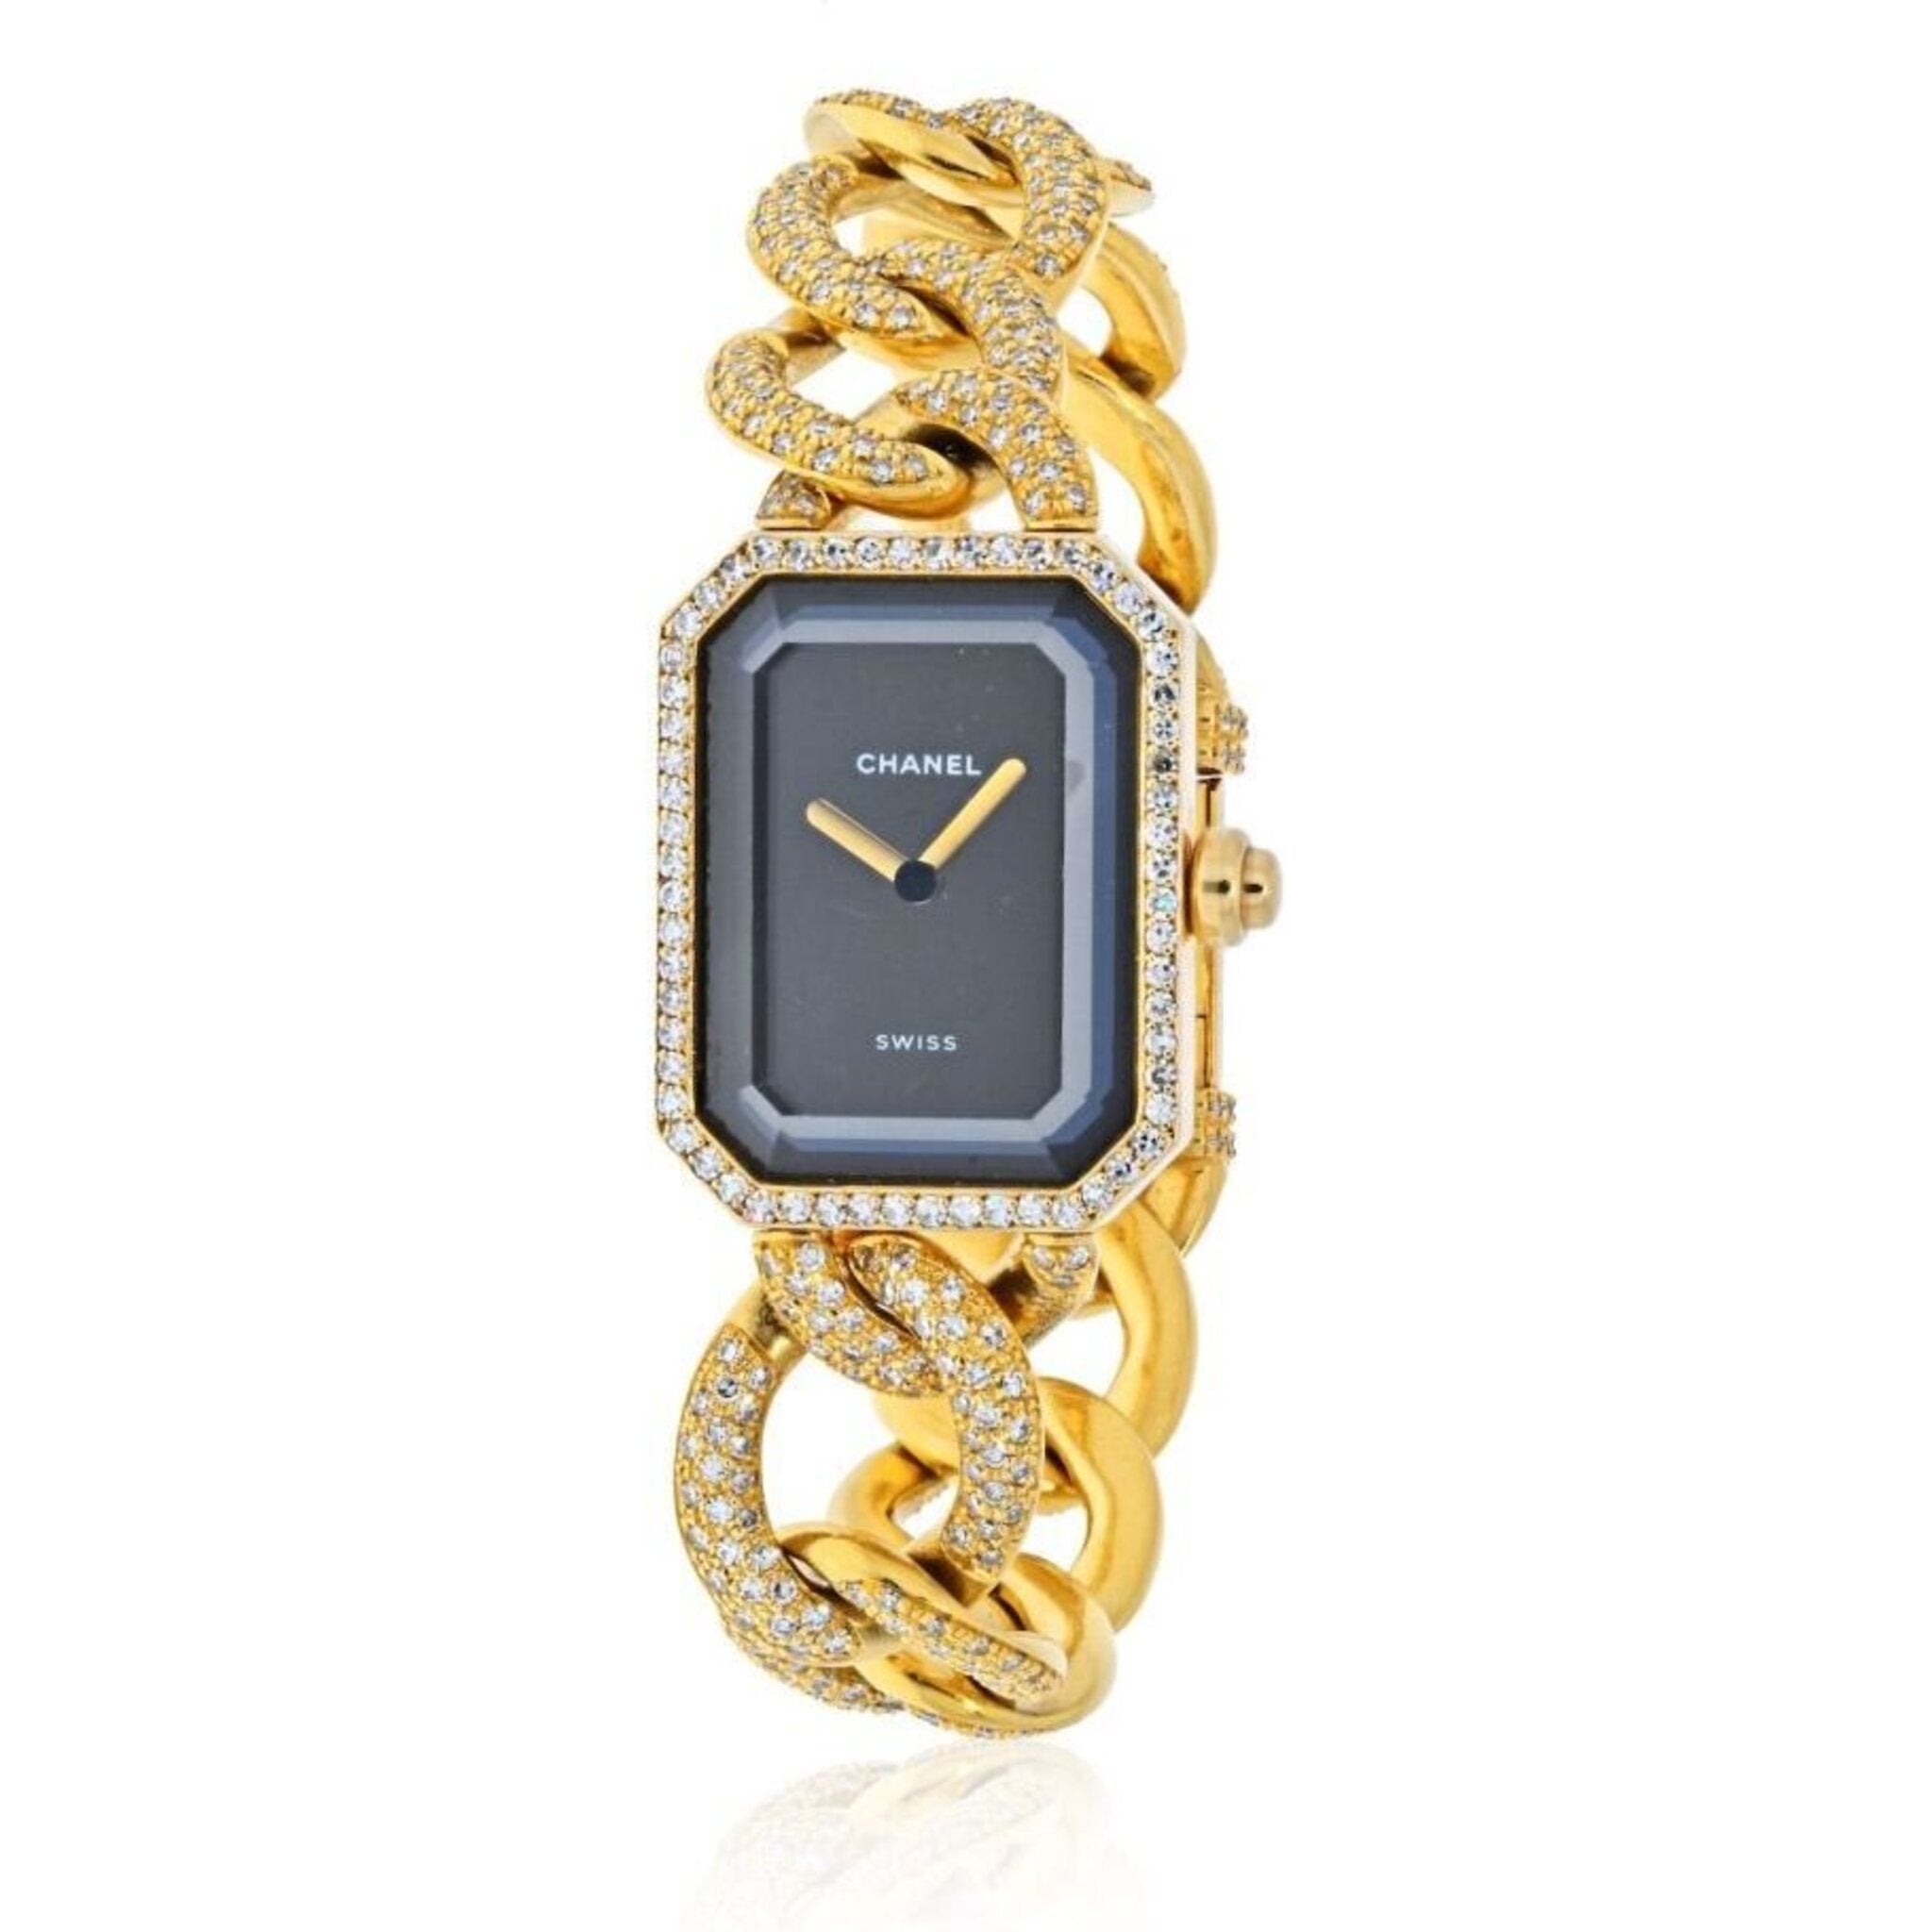 Watch Chanel Première  Première H3258 Yellow Gold - Diamonds - Black Dial  - Yellow Gold Chain Bracelet